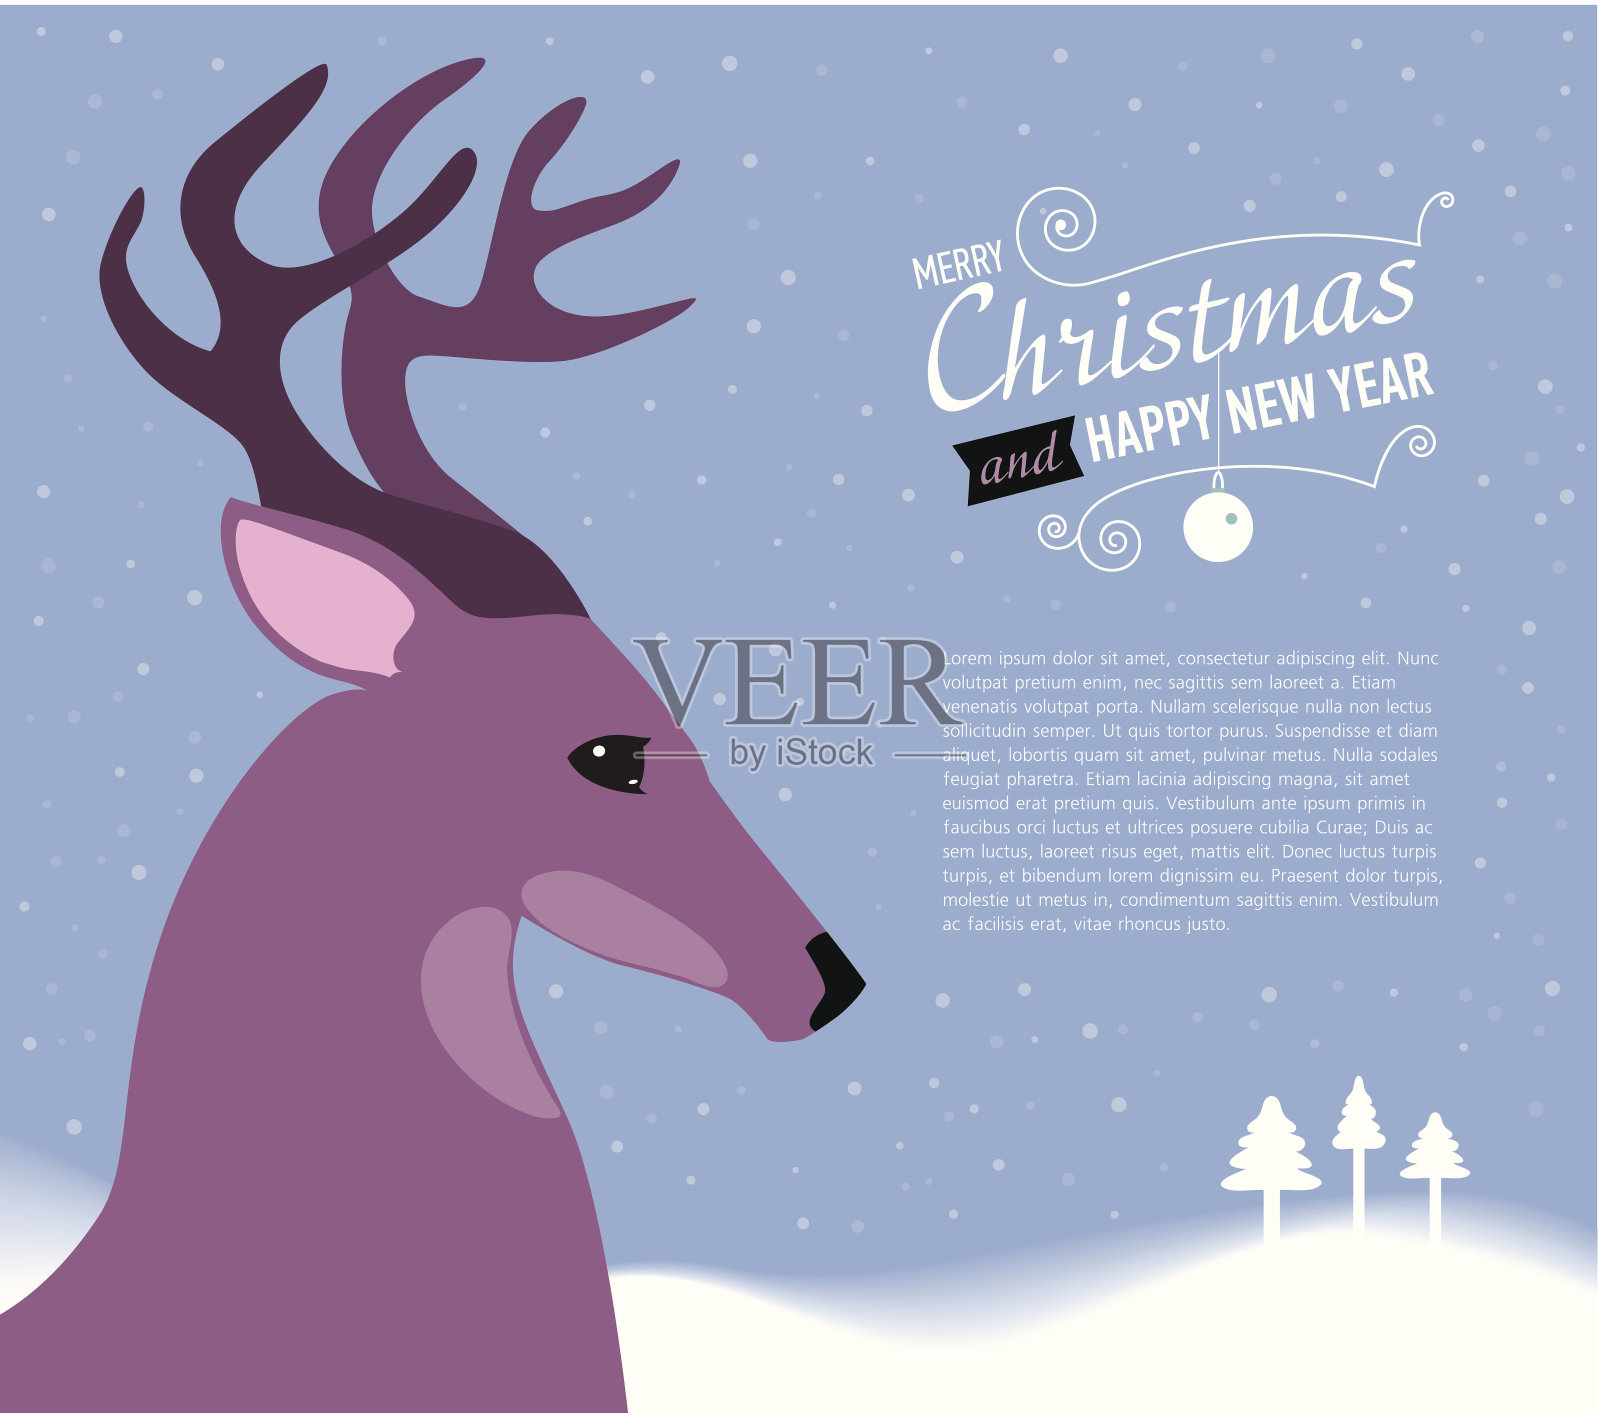 祝你圣诞快乐，并附上鹿的新年贺卡。插画图片素材